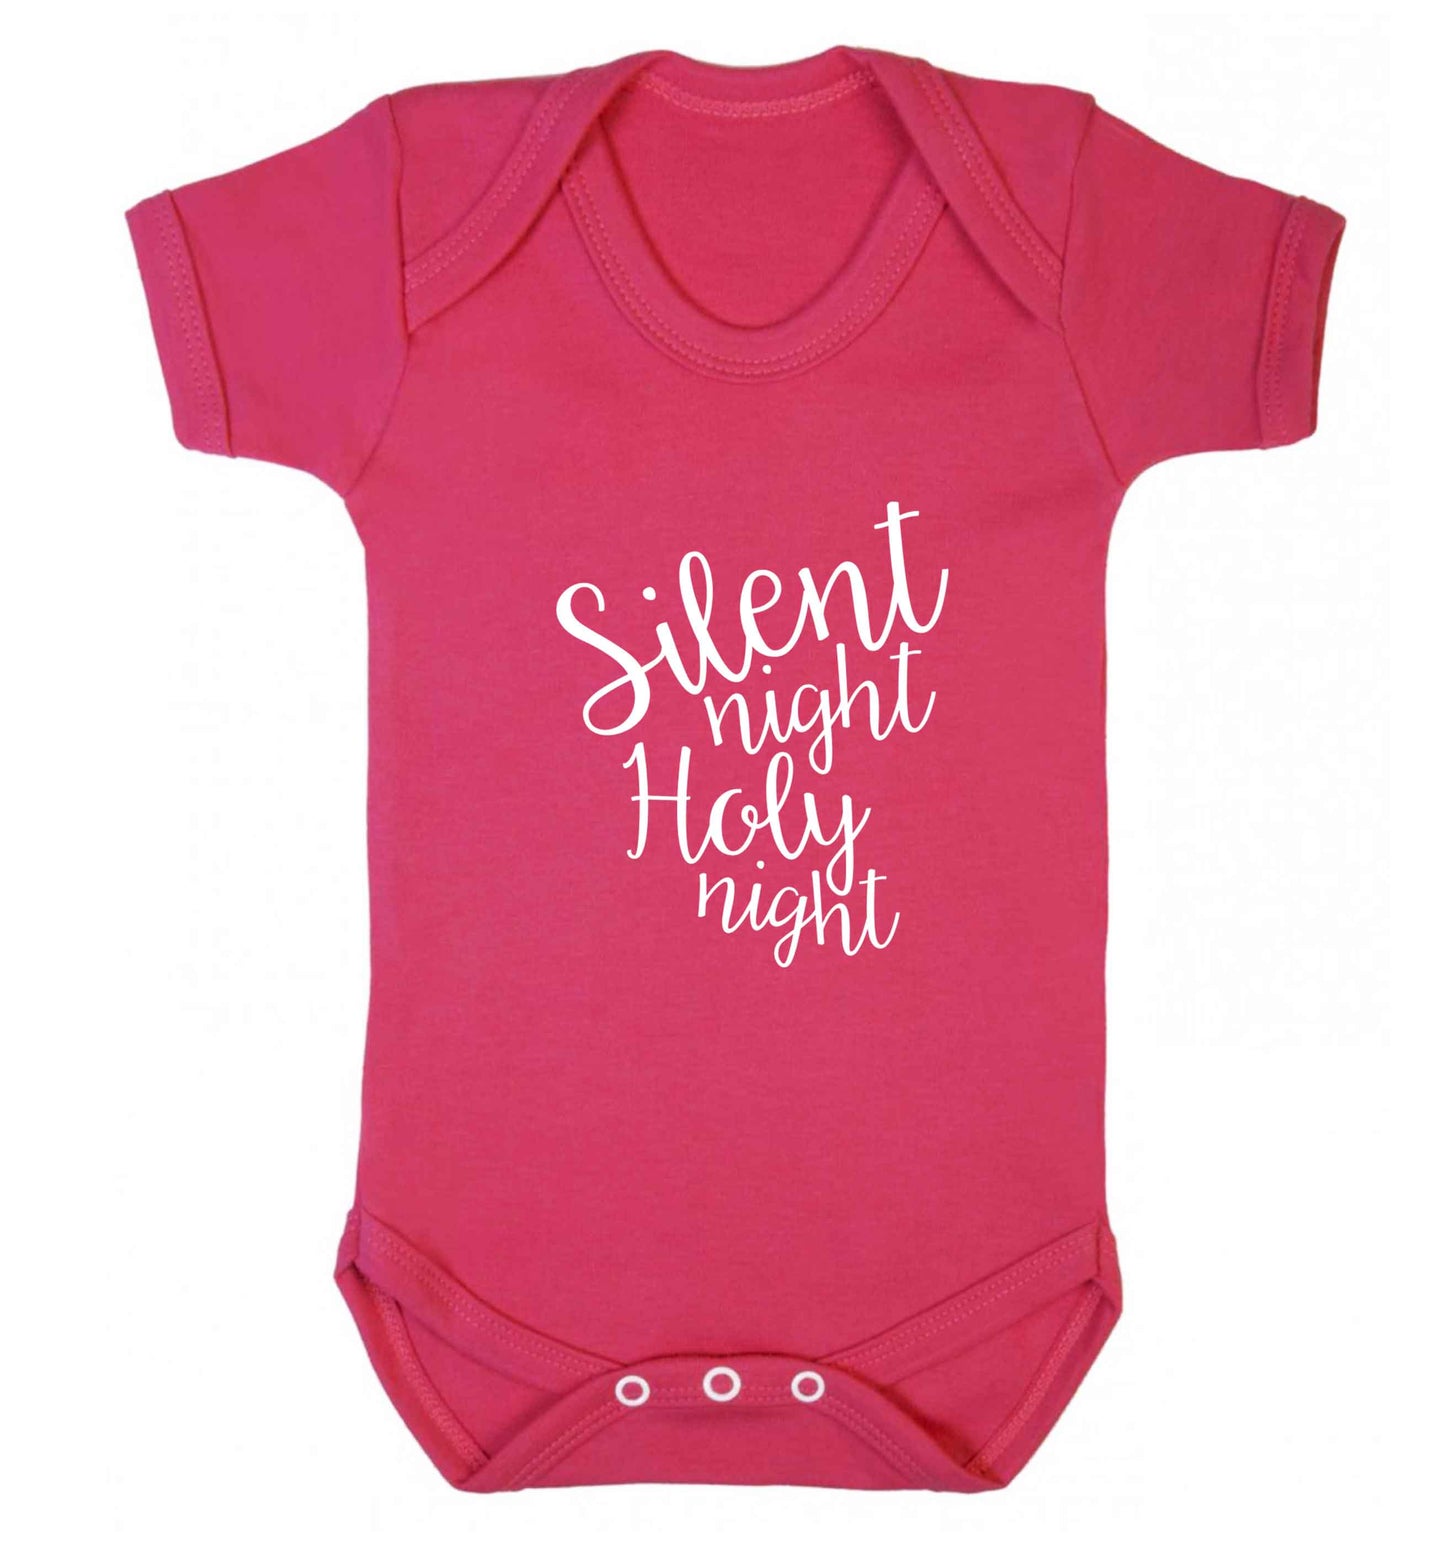 Silent night holy night baby vest dark pink 18-24 months